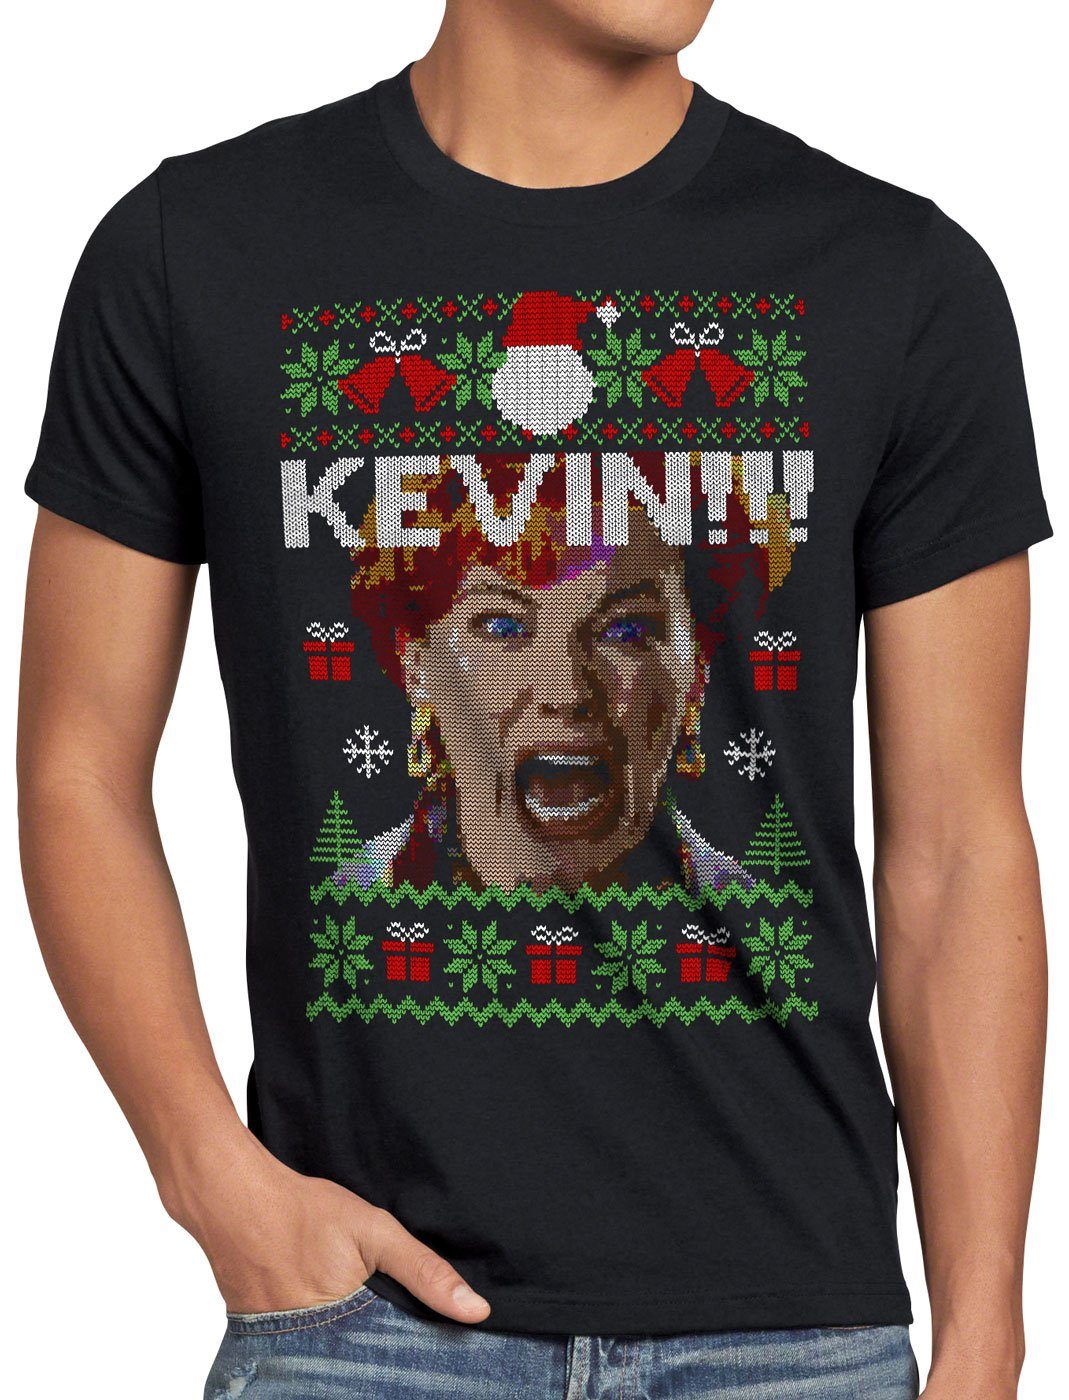 Print-Shirt Weihnachts ugly style3 Allein Kevin zu Haus sweater Weihnachten Pullover